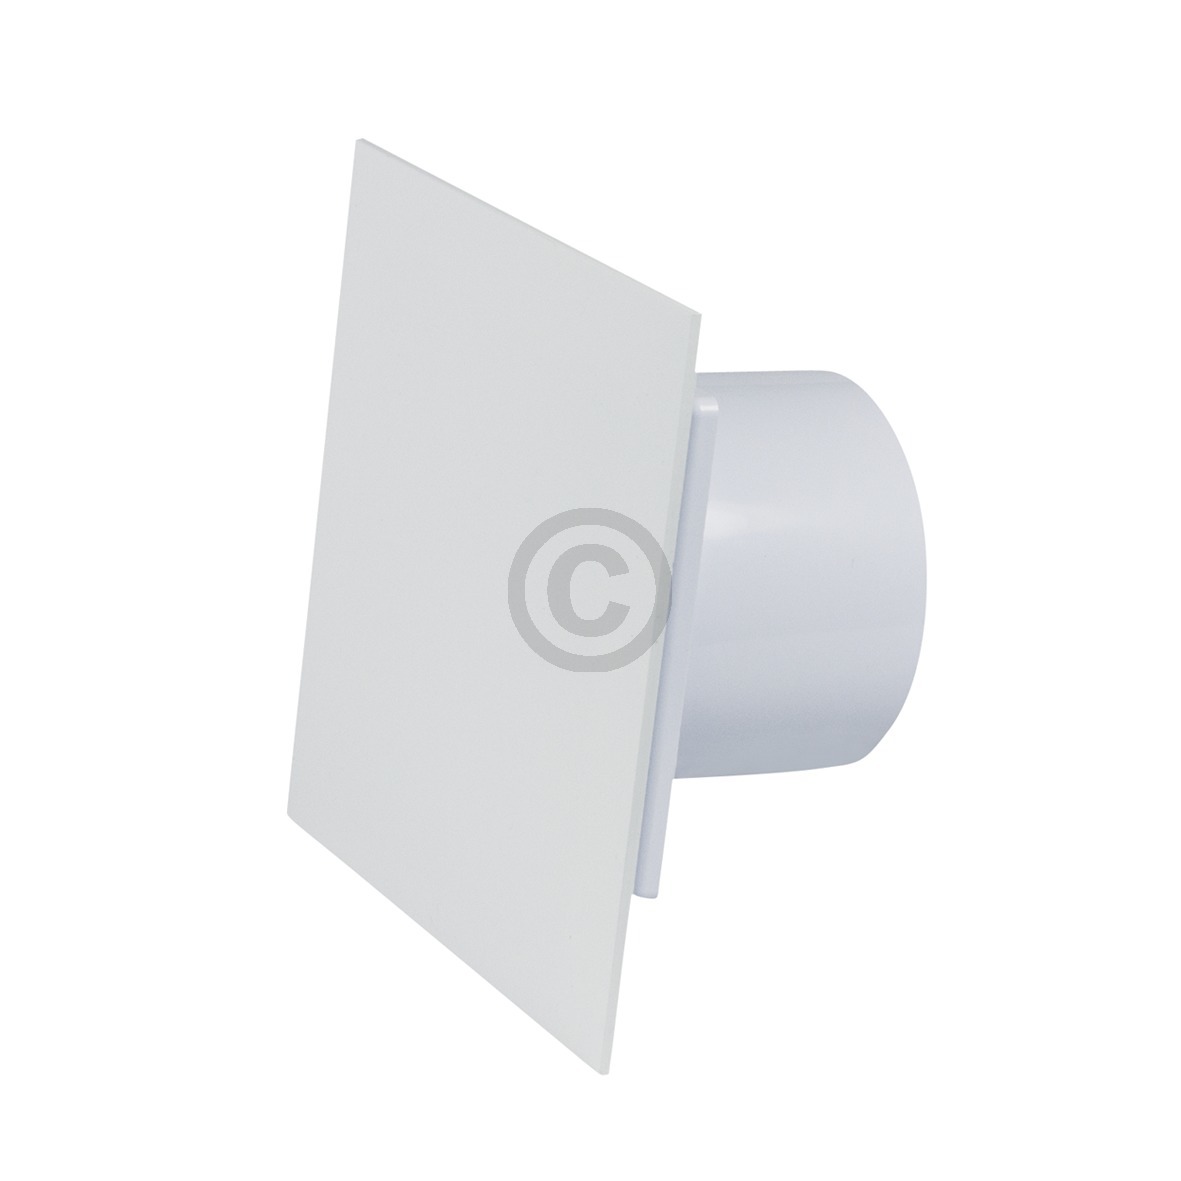 Abdeckplatte für Wohnraumventilator 100 weiß glänzend für Decke Wand Bad Toilette etc